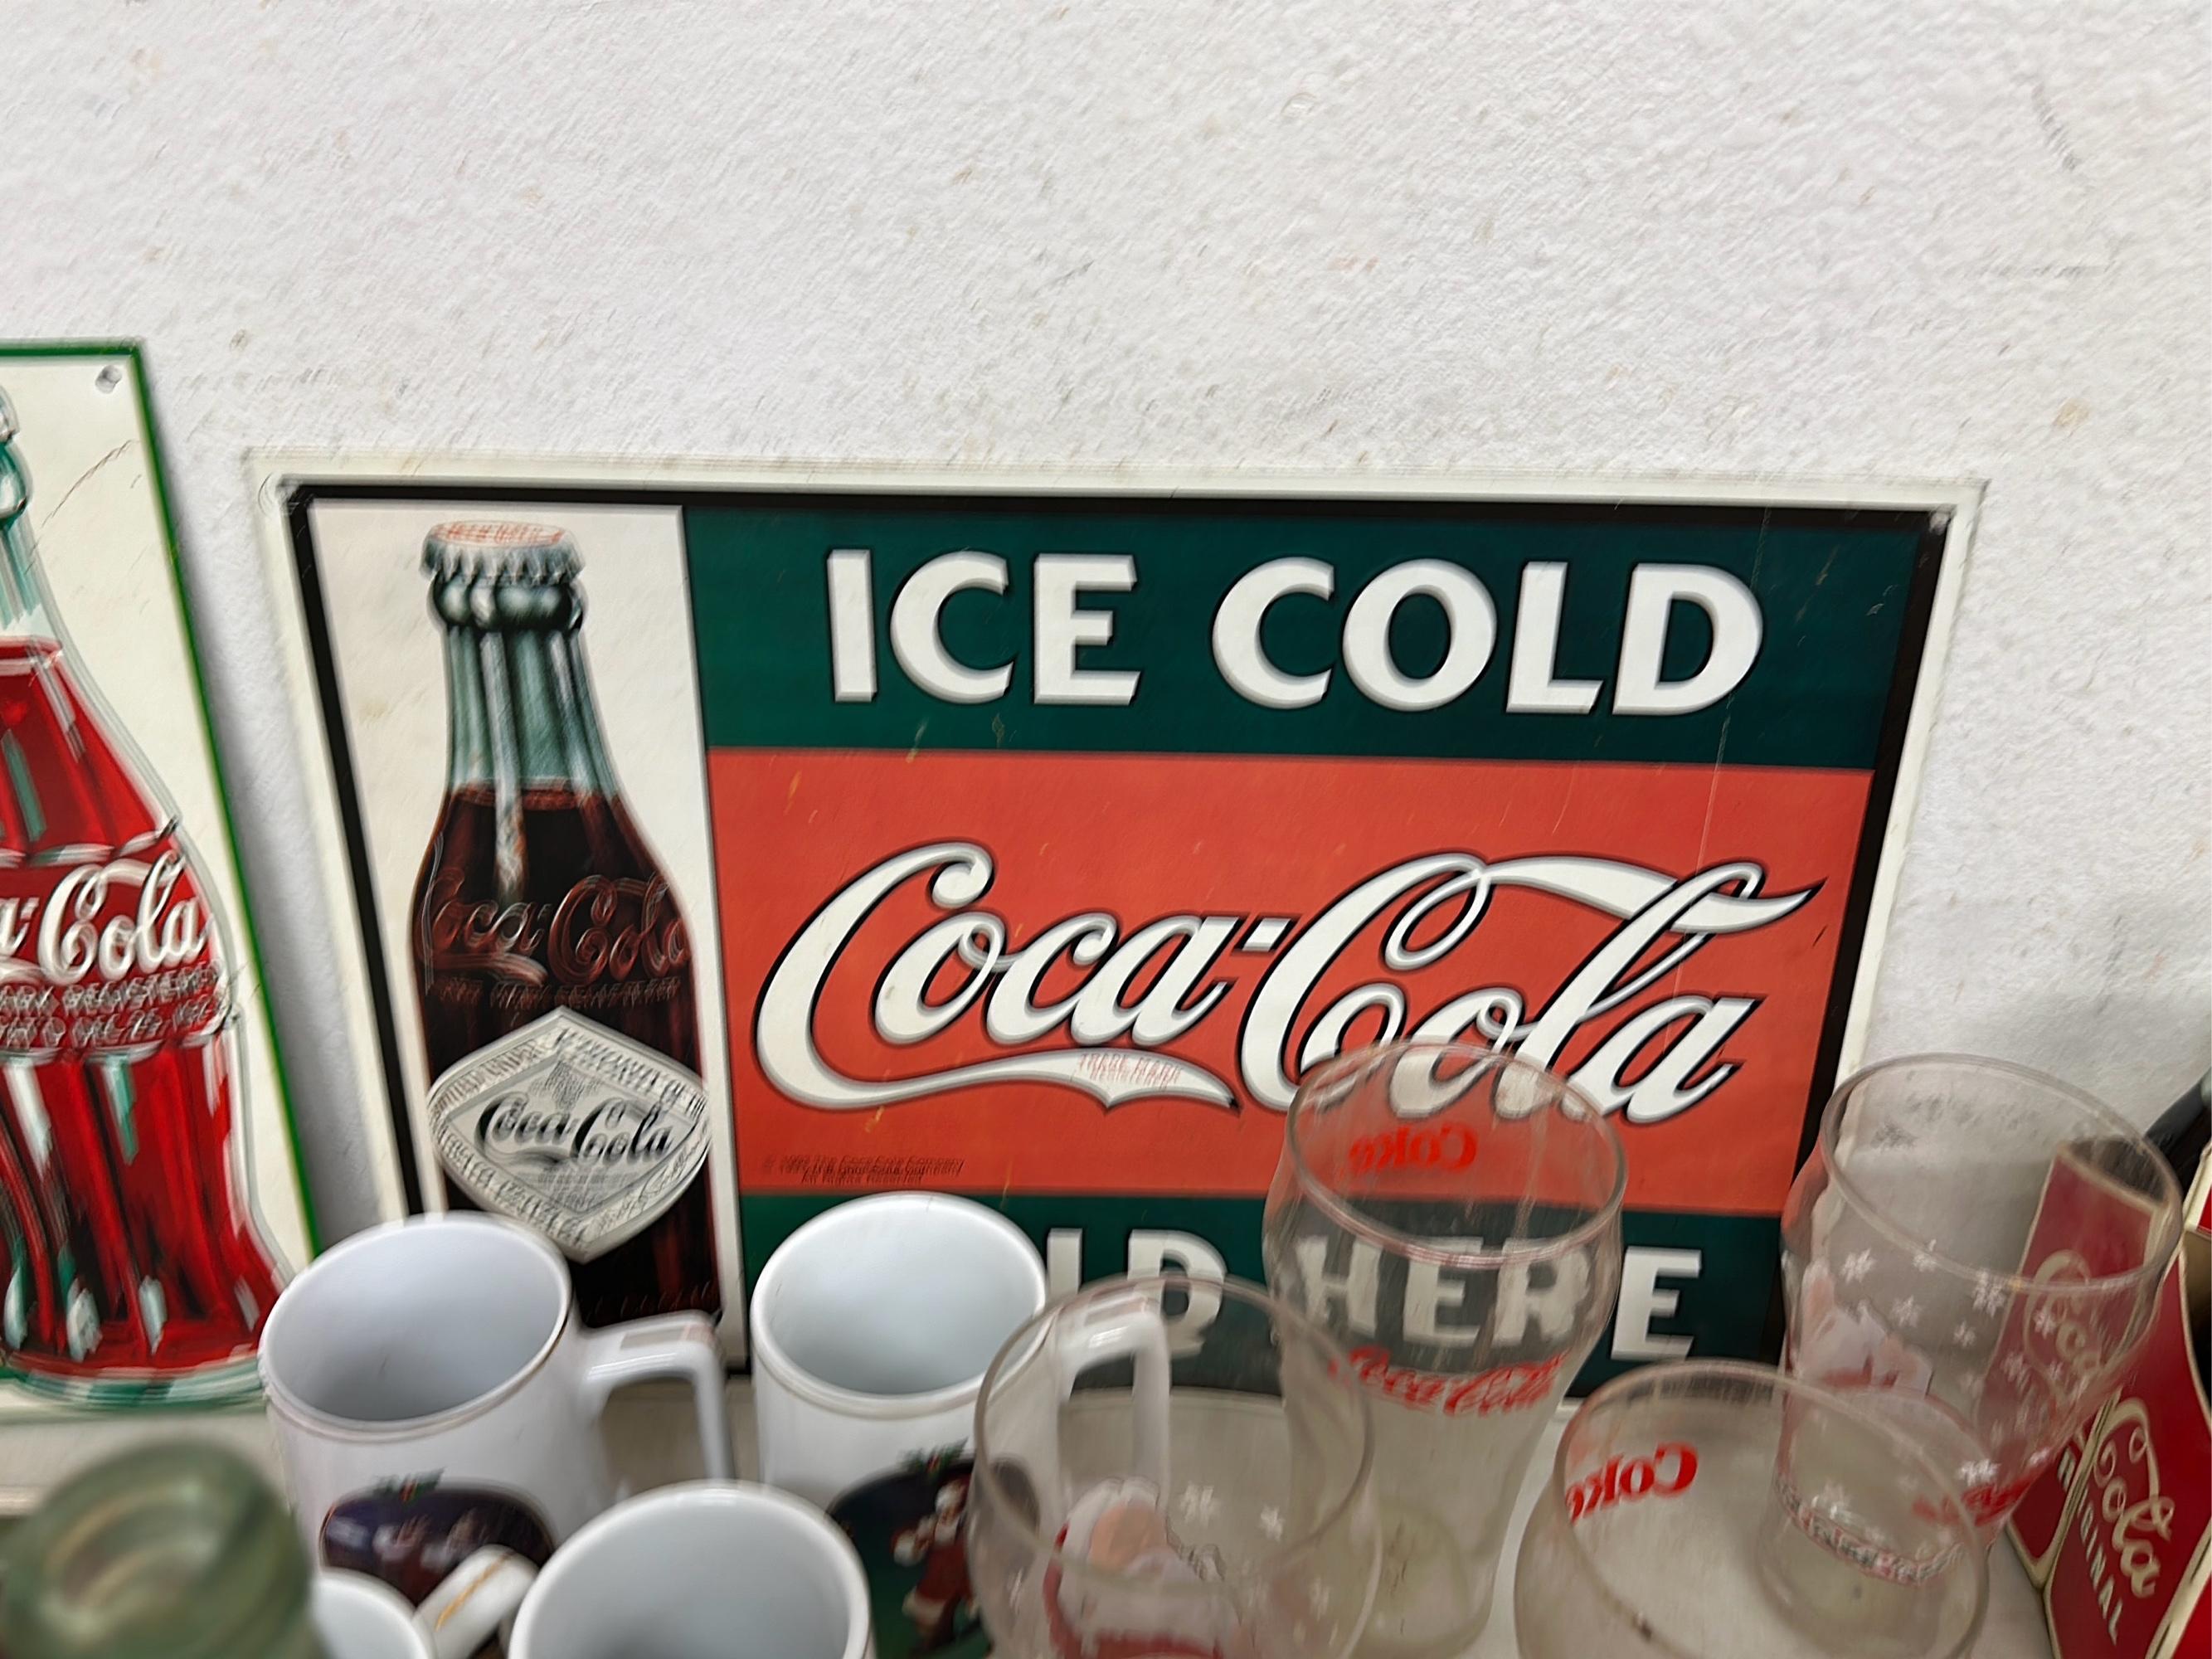 Coca-Cola Collectibles & Collectible Soda Bottles